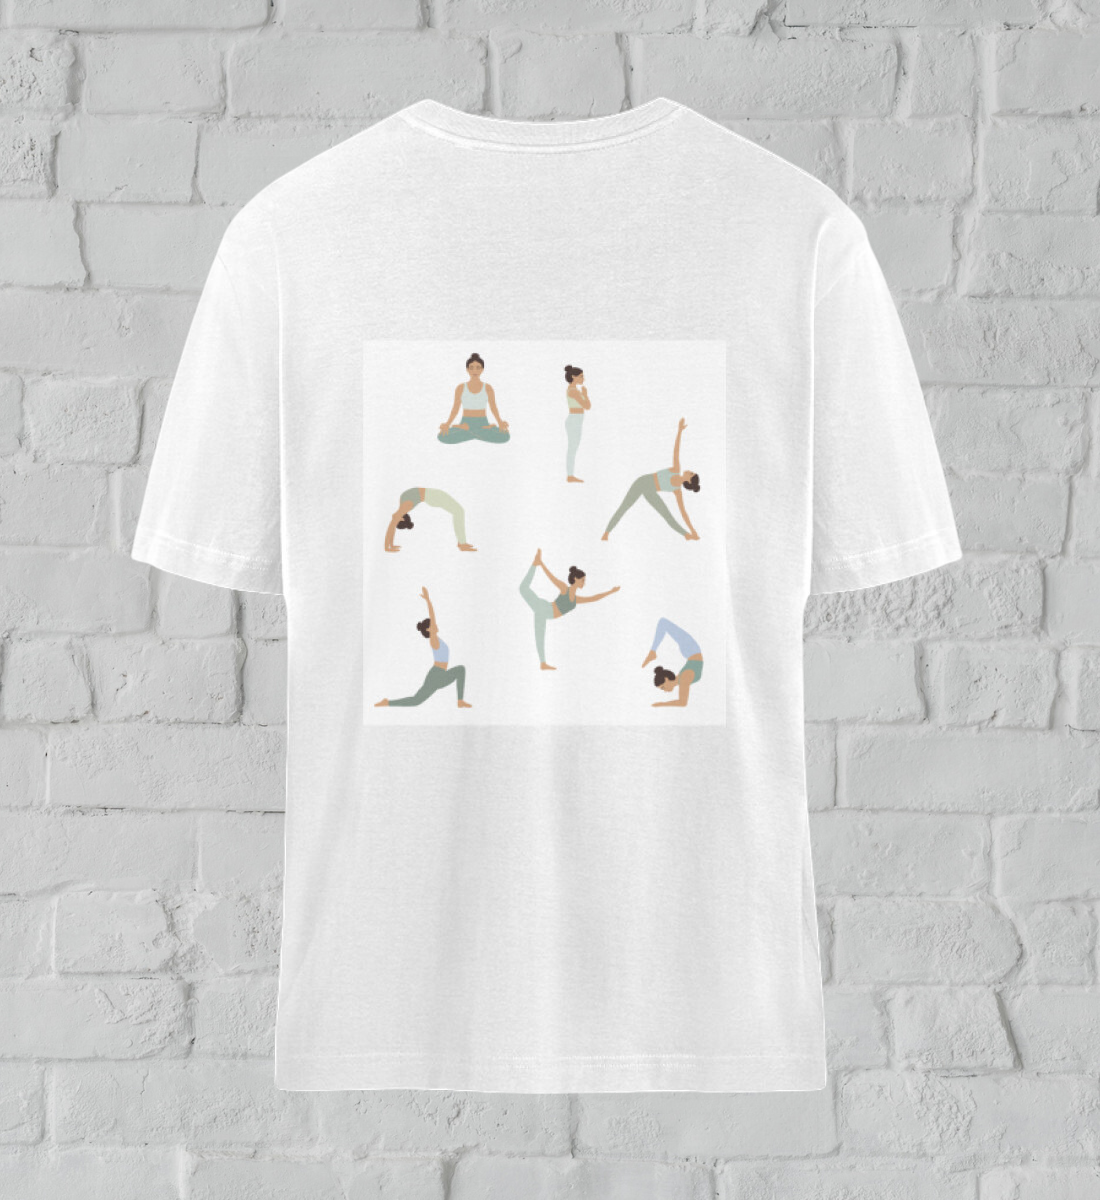 asanas l t-shirt bio-baumwolle weiß l ausgefallene yoga kleidung l umweltfreundliche mode aus natürlichen materialien